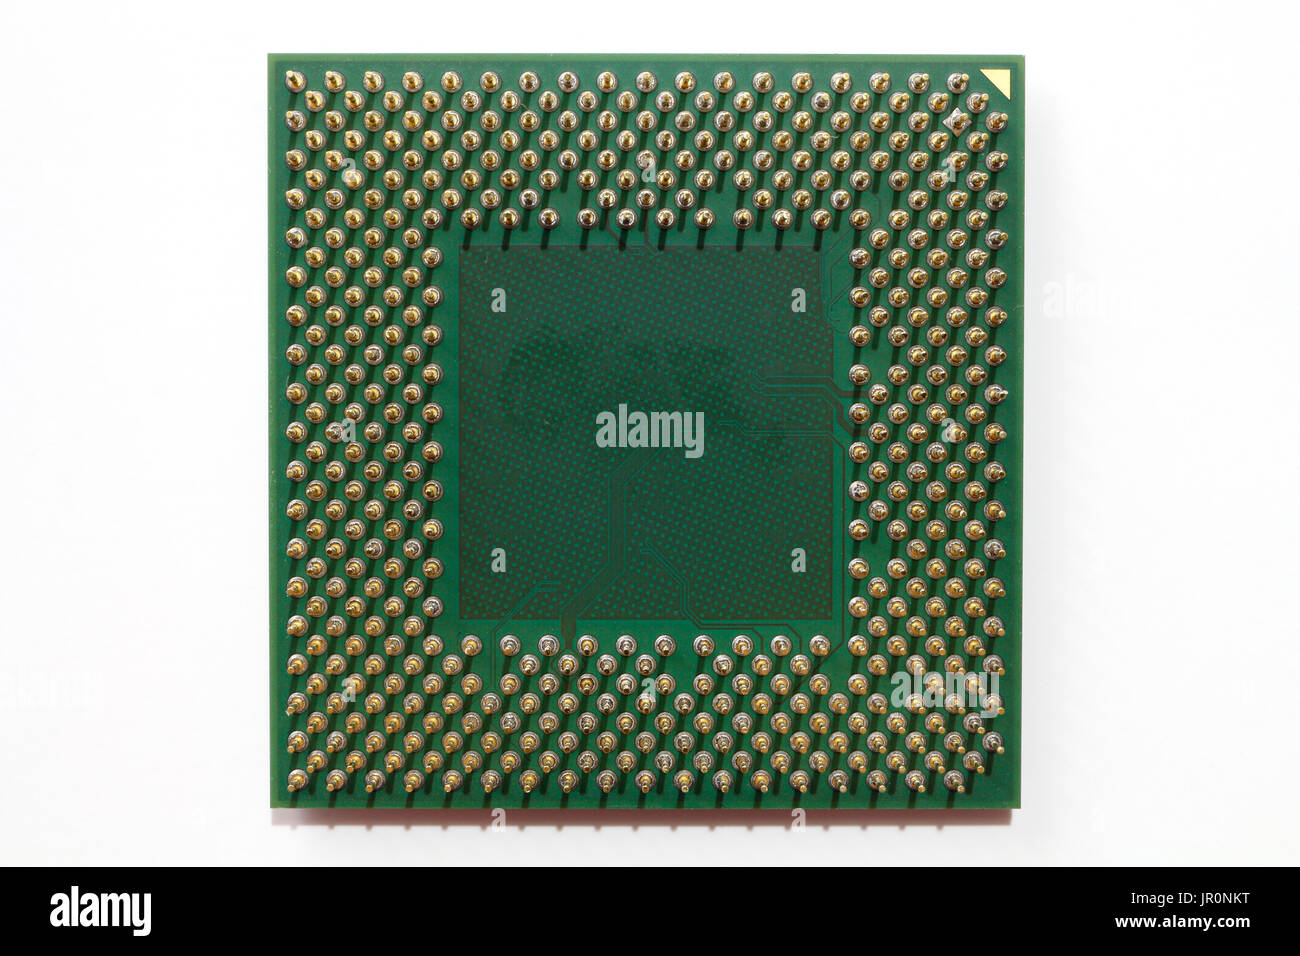 Die Unterseite der AMD Athlon Prozessor, die Anordnung der Klemmen  Stockfotografie - Alamy